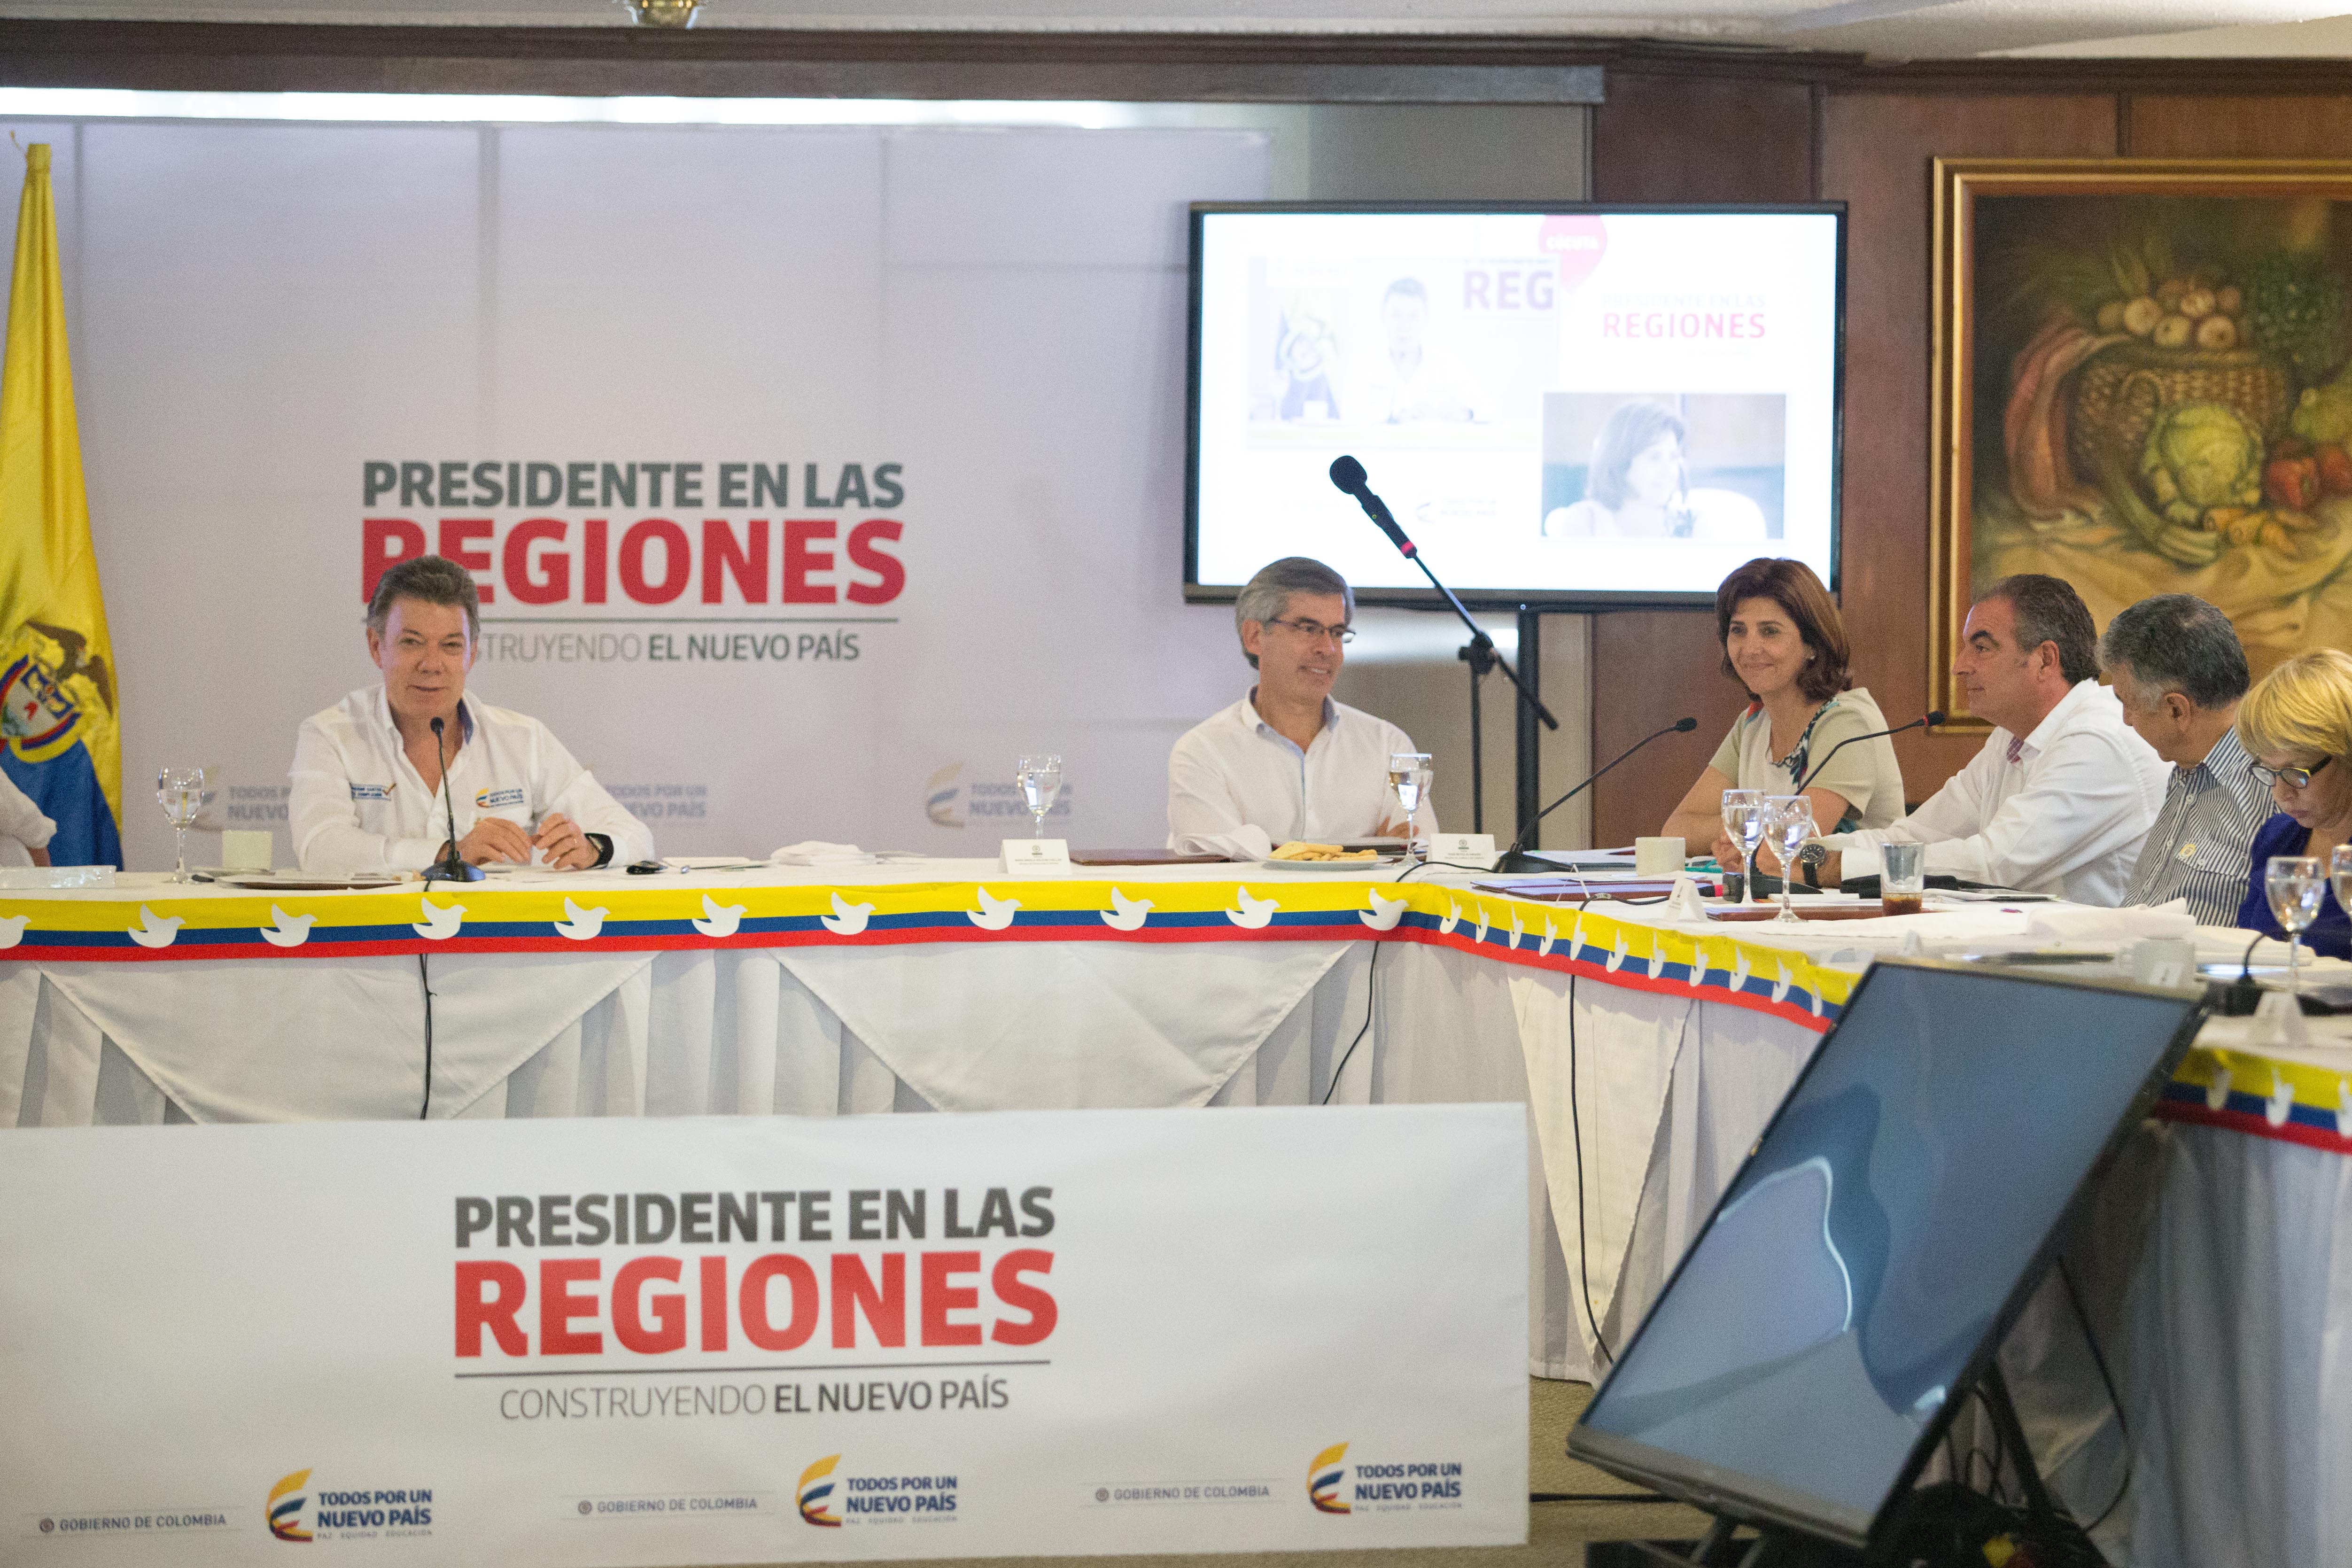 Consejo de Ministros liderado por el Presidente Juan Manuel Santos, Ministra Holguín 